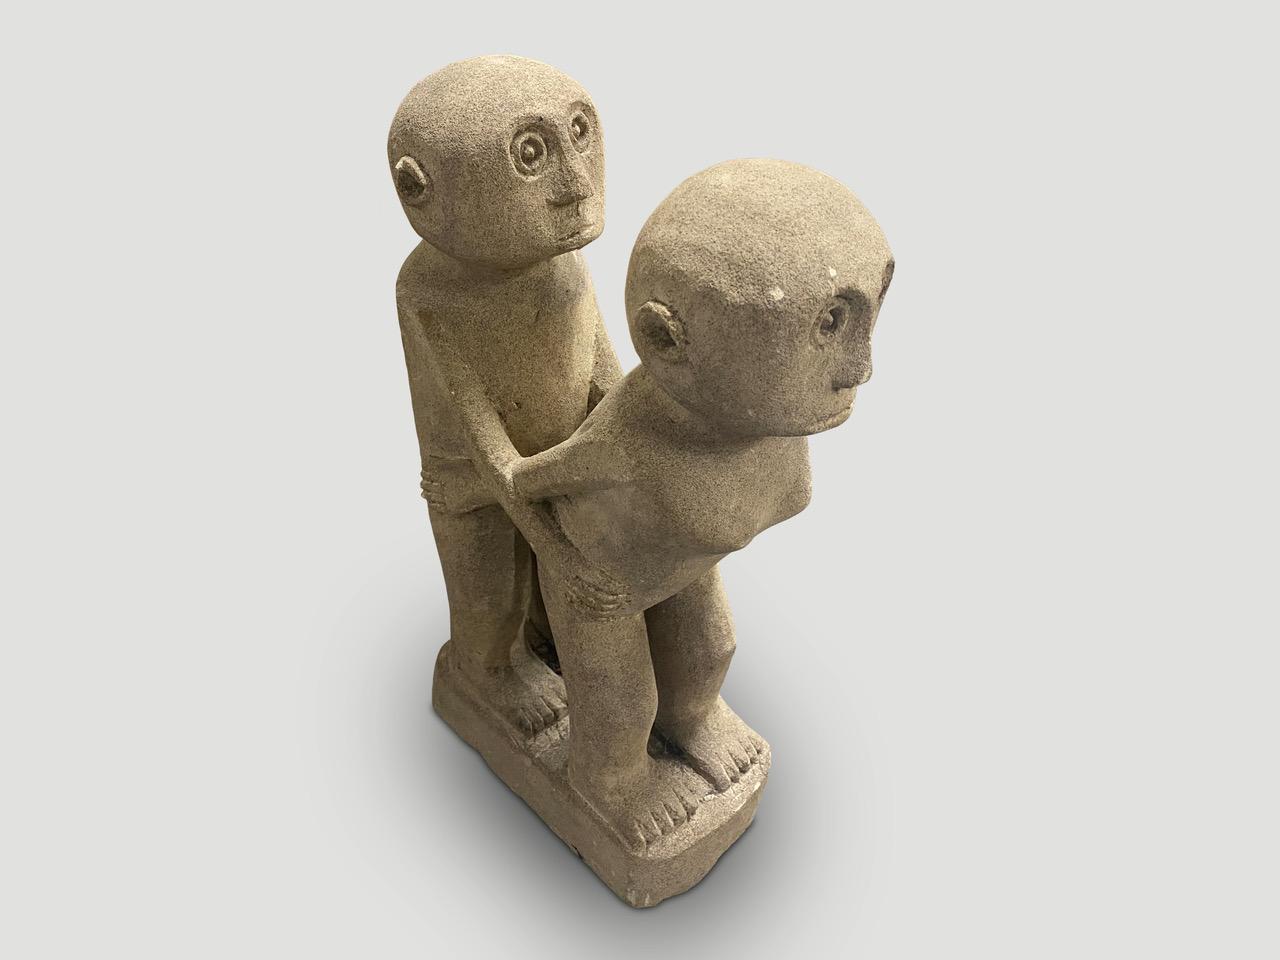 Statue von Mann und Frau aus Sandstein. Handgefertigt auf der Insel Sumba.

Diese Statue wurde im Geiste von Wabi-Sabi handgefertigt, einer japanischen Philosophie, die besagt, dass Schönheit in der Unvollkommenheit und Vergänglichkeit zu finden